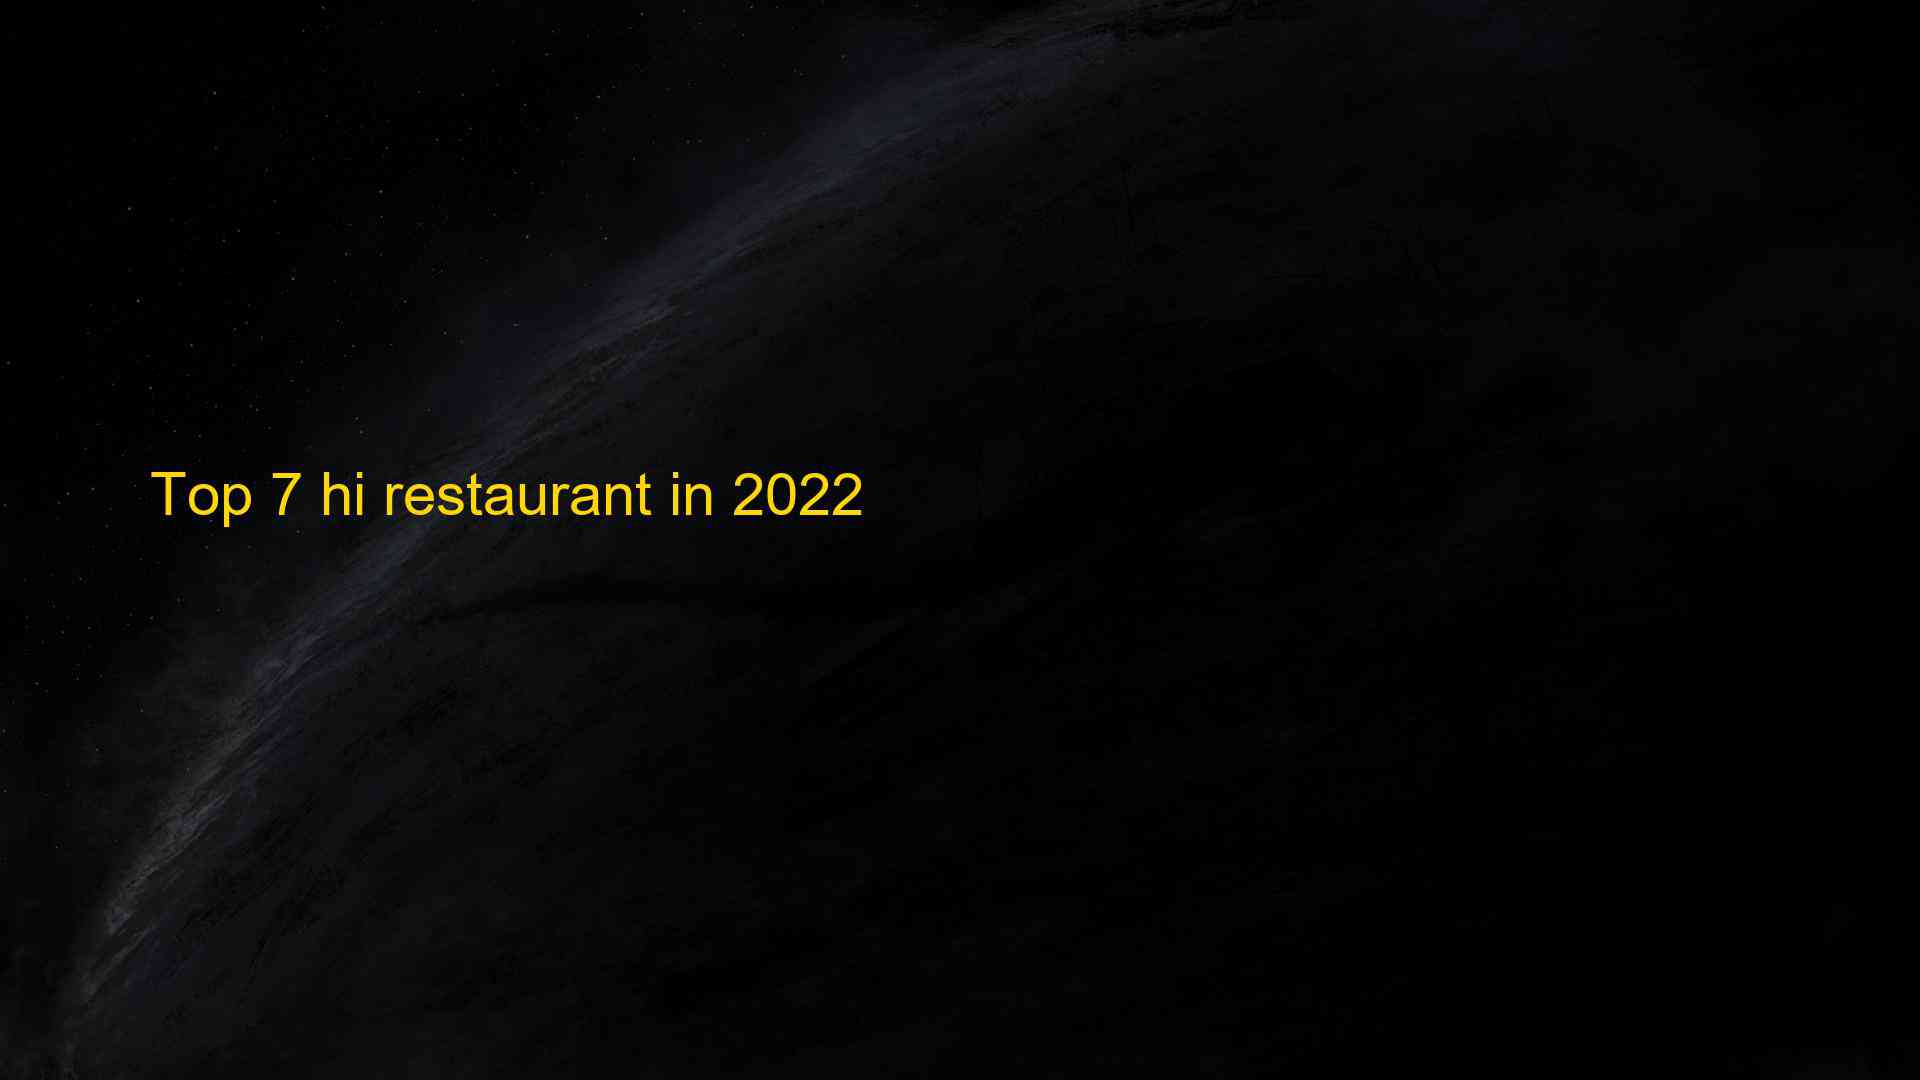 Top 7 hi restaurant in 2022 1662965907